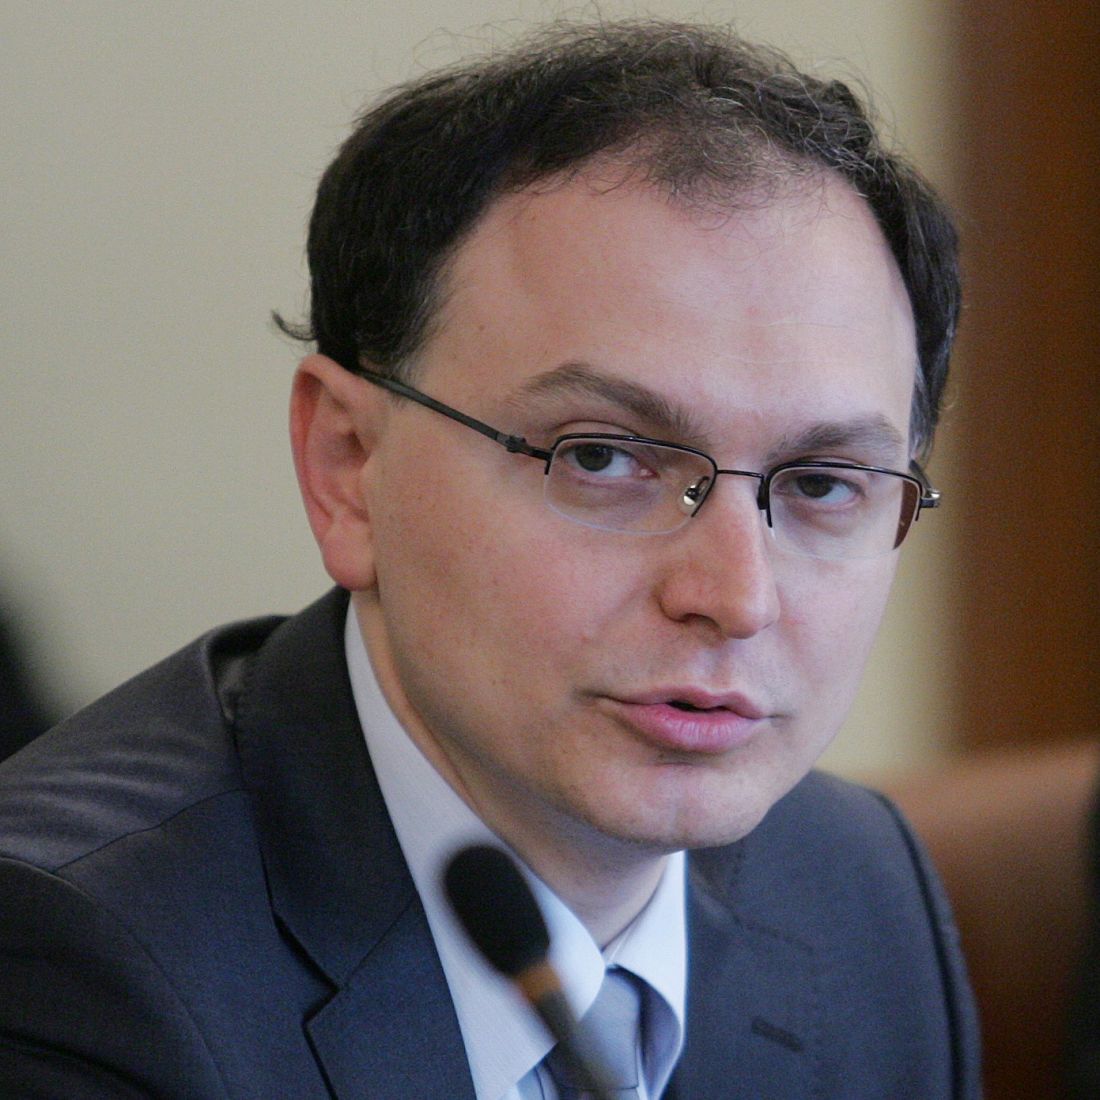 Тодор Коларов се оплака от липса на подкрепа, Бойко Борисов обаче заяви, че той прави скандали